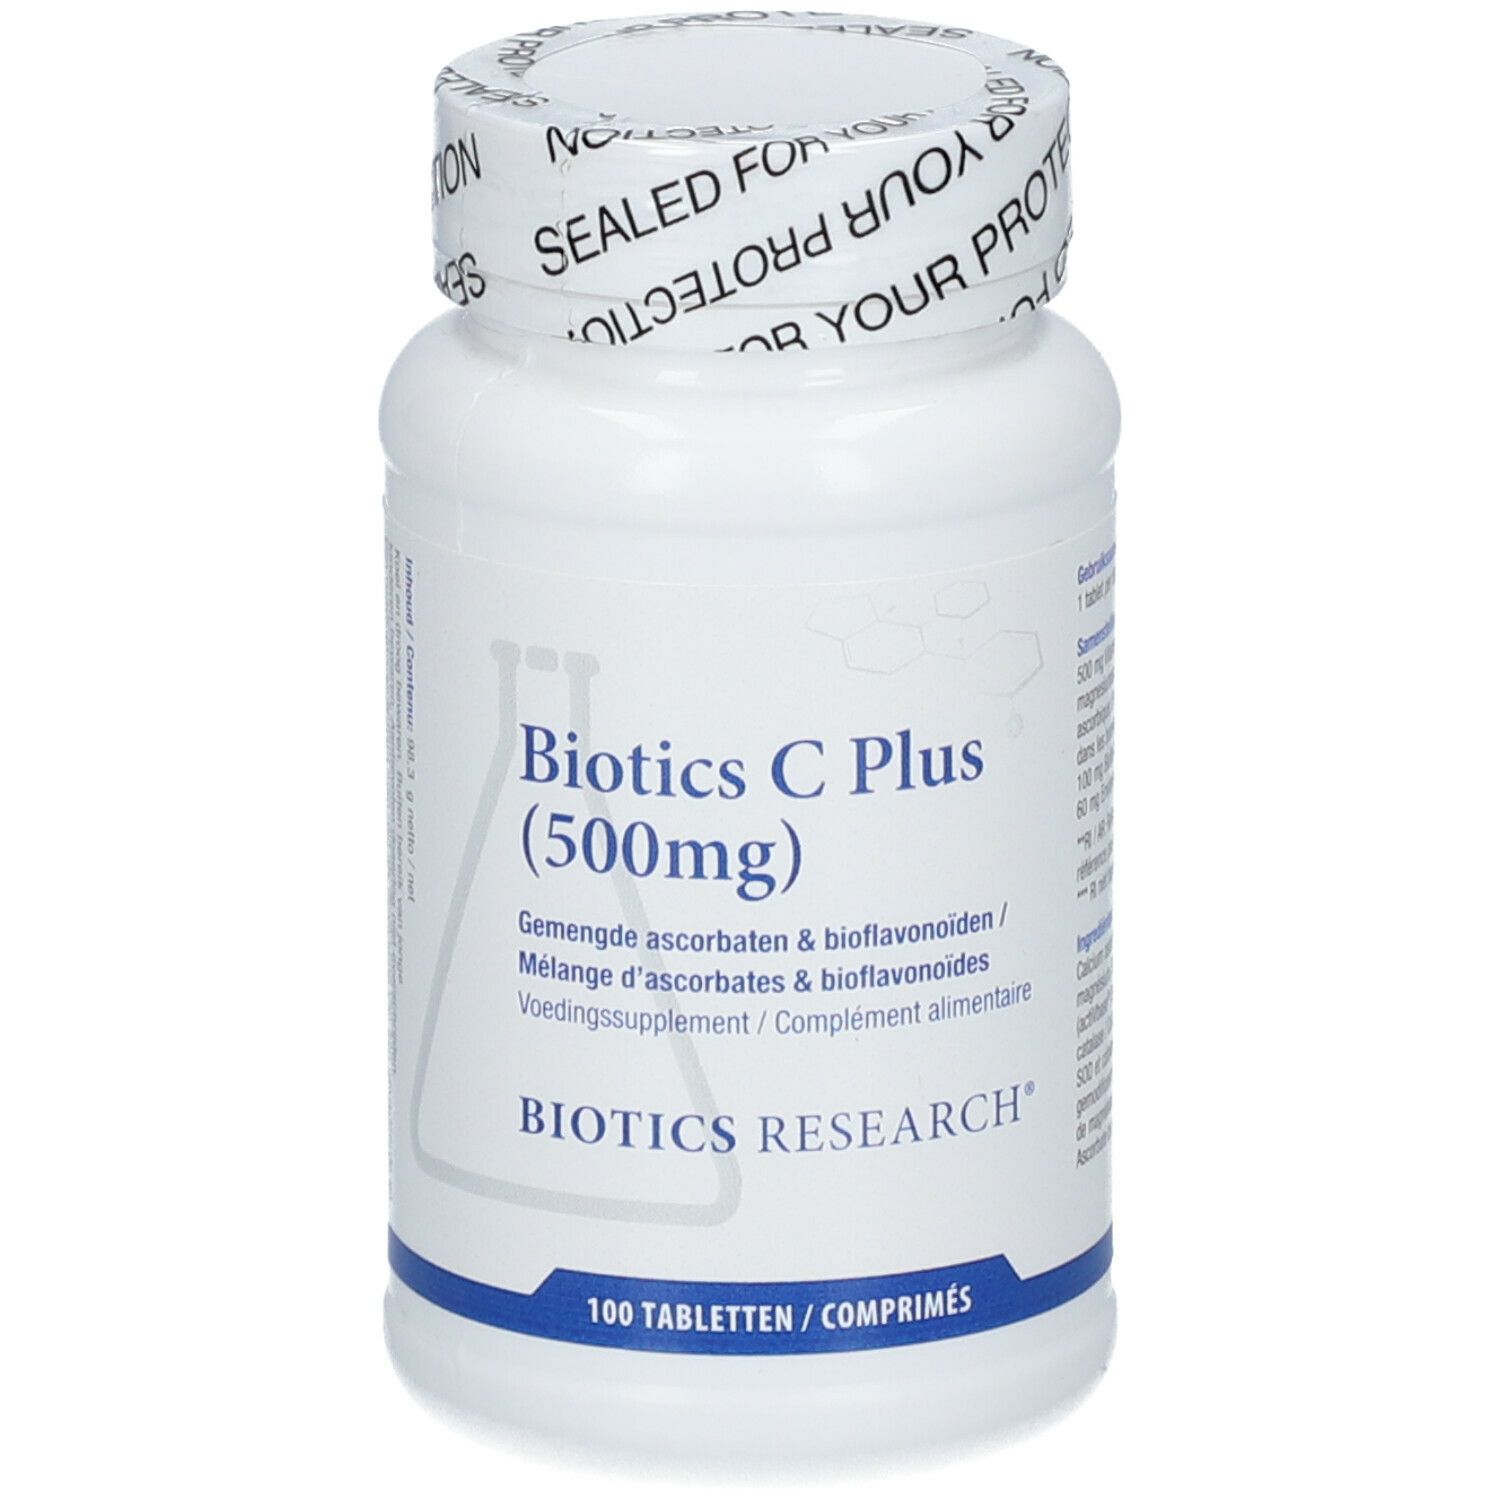 Biotics Research® Biotics C Plus 500mg